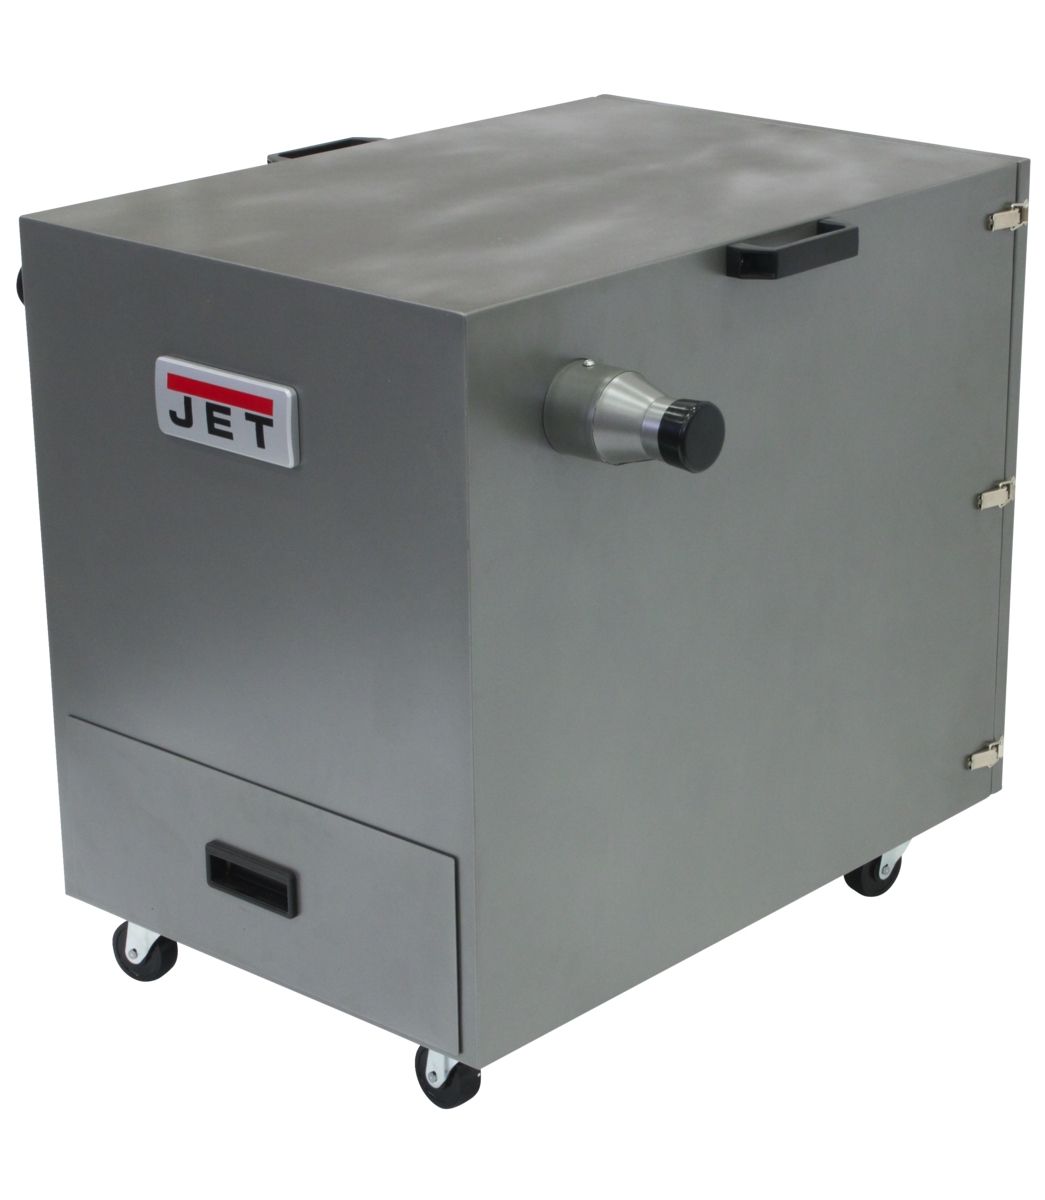 JET JDC-501 Metal Dust Collector, 490 CFM, 1Ph 115/230V